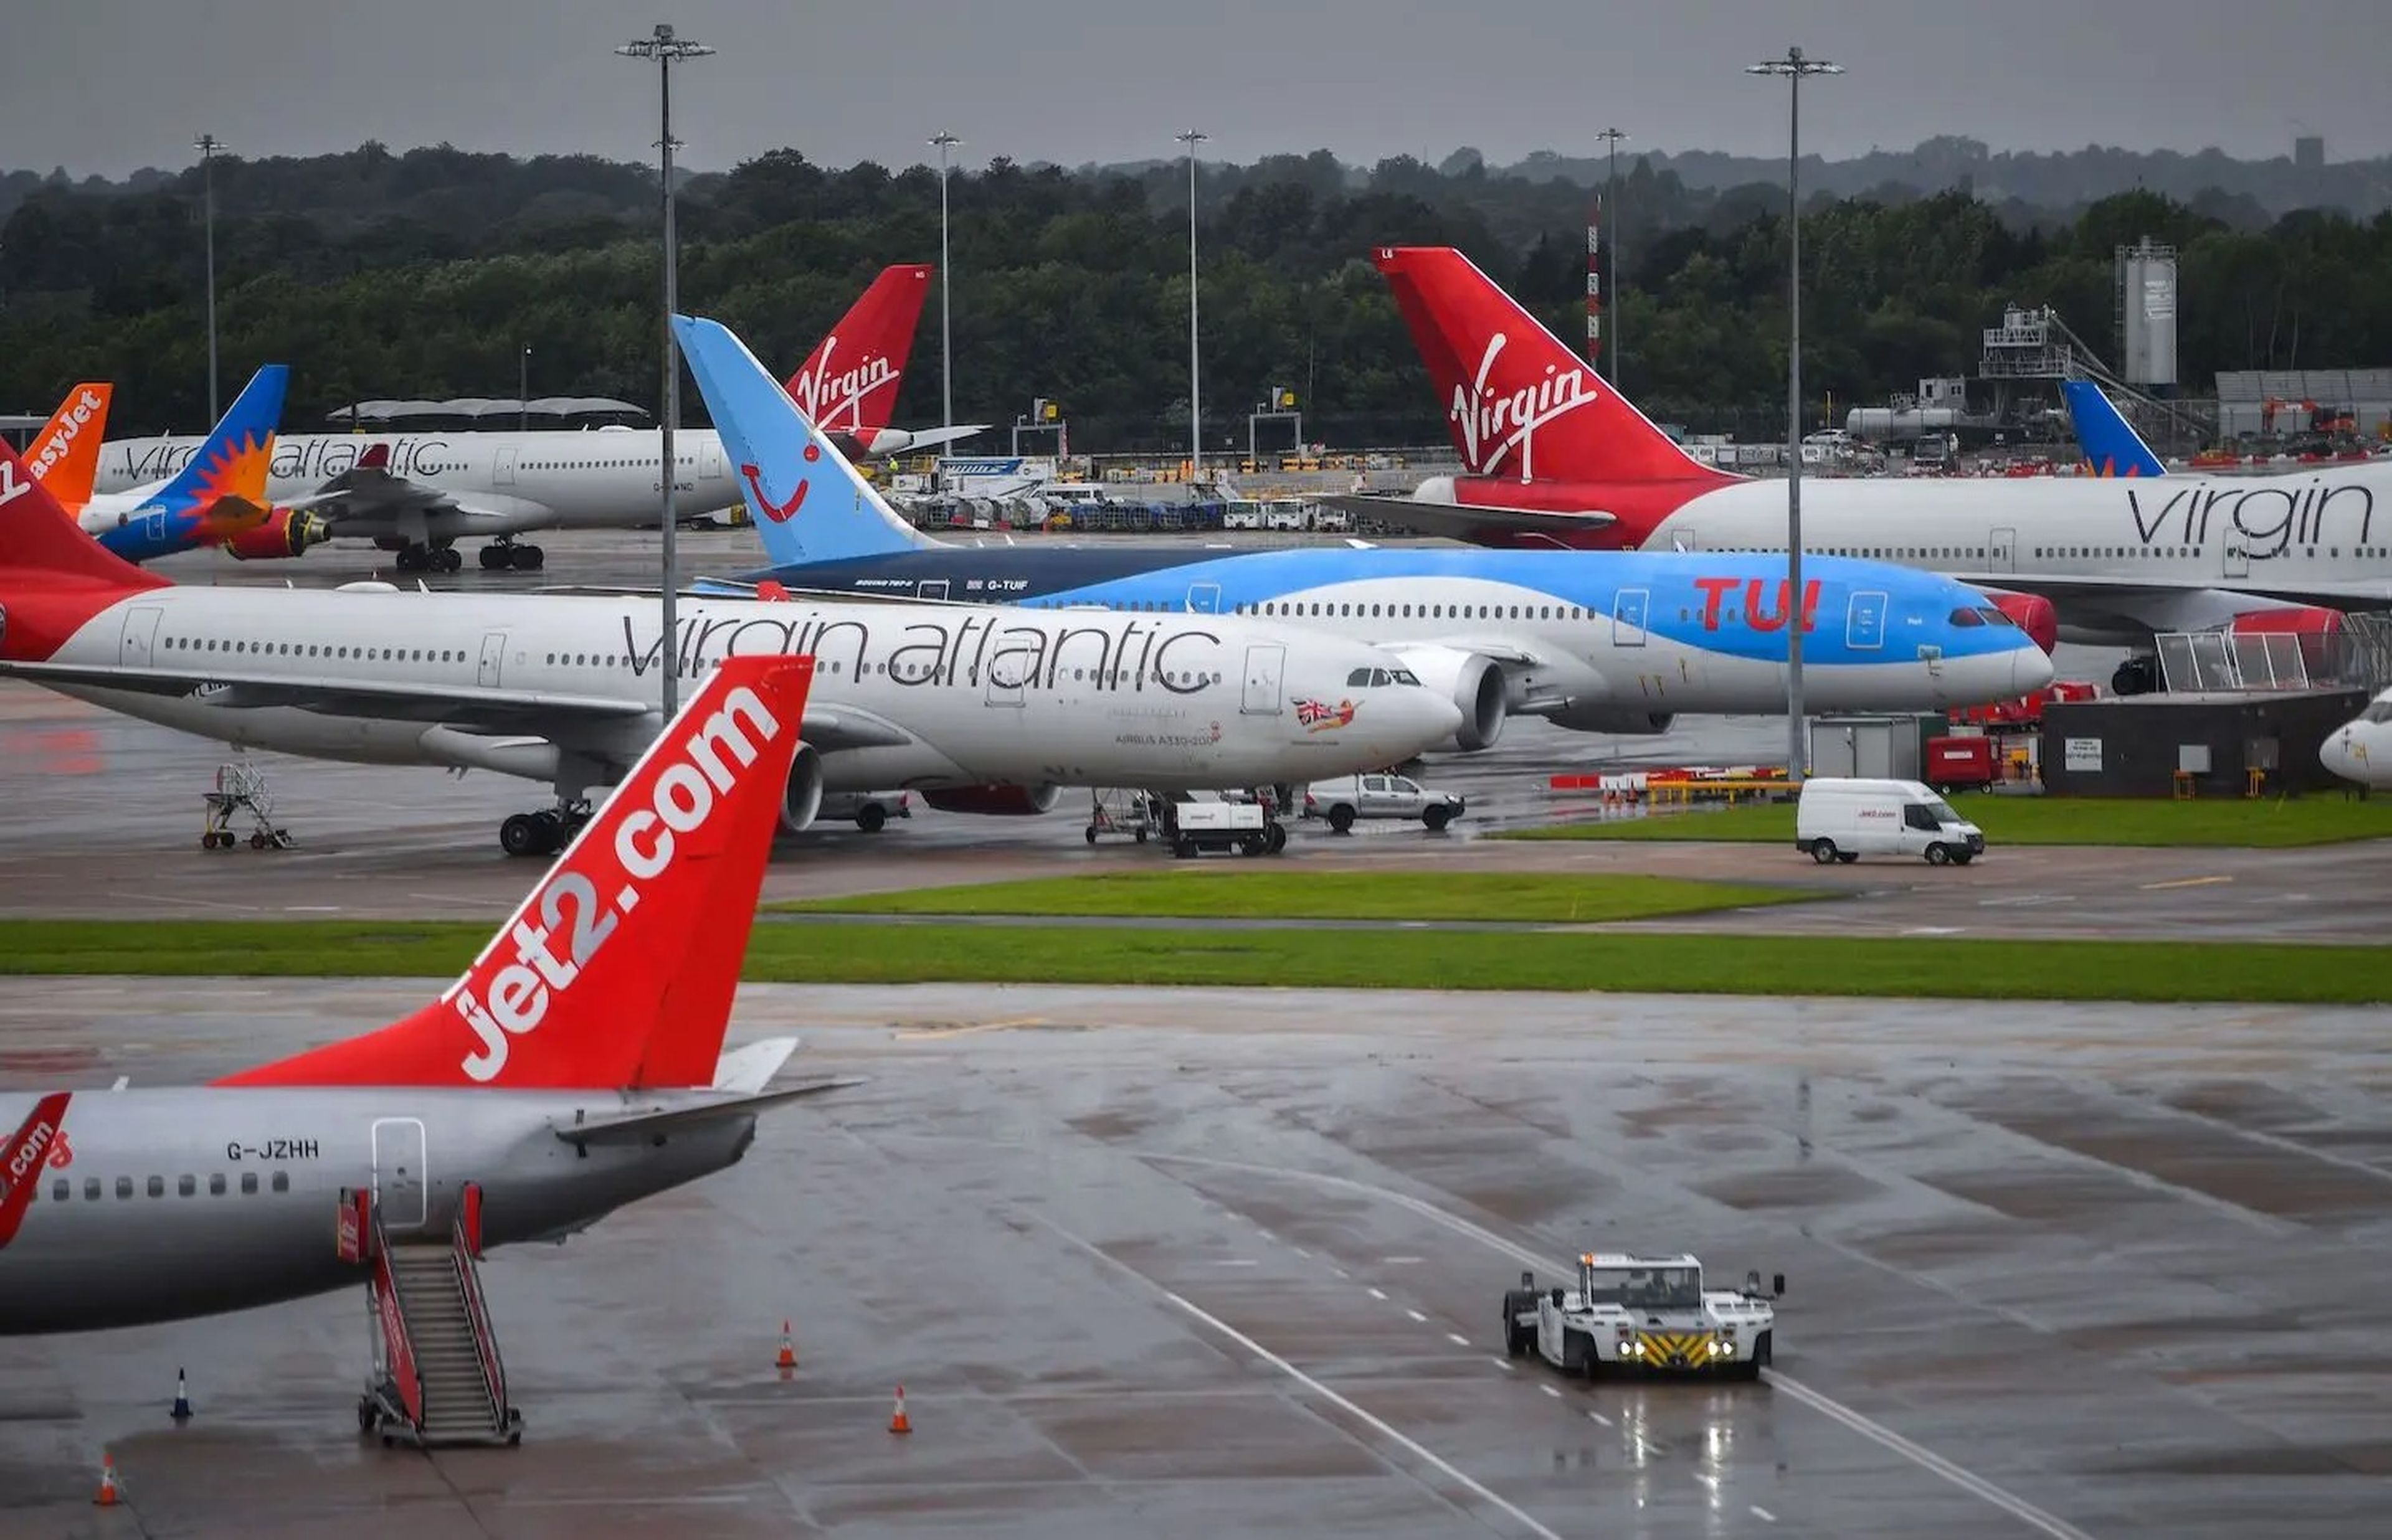 Aviones operados por TUI, Virgin Atlantic, Easyjet y Jet2, fotografiados en el aeropuerto de Manchester.